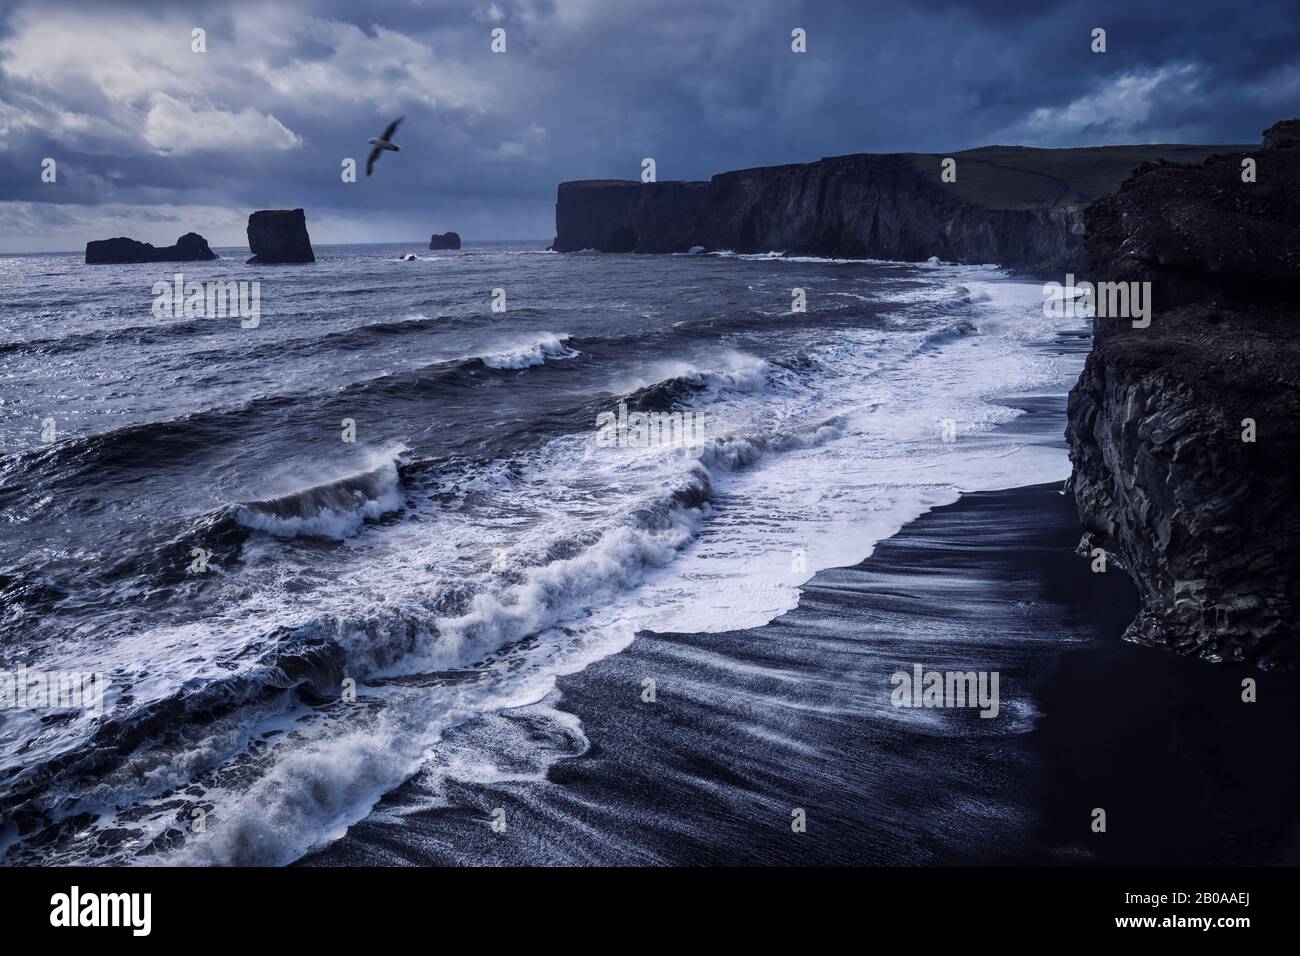 Vue sur la mer pluvieuse avec des vagues qui s'écrasent contre la plage de sable noir avec des roches volcaniques et des oiseaux volant dans le ciel nuageux à Dyrholaey dans le sud de l'Islande Banque D'Images